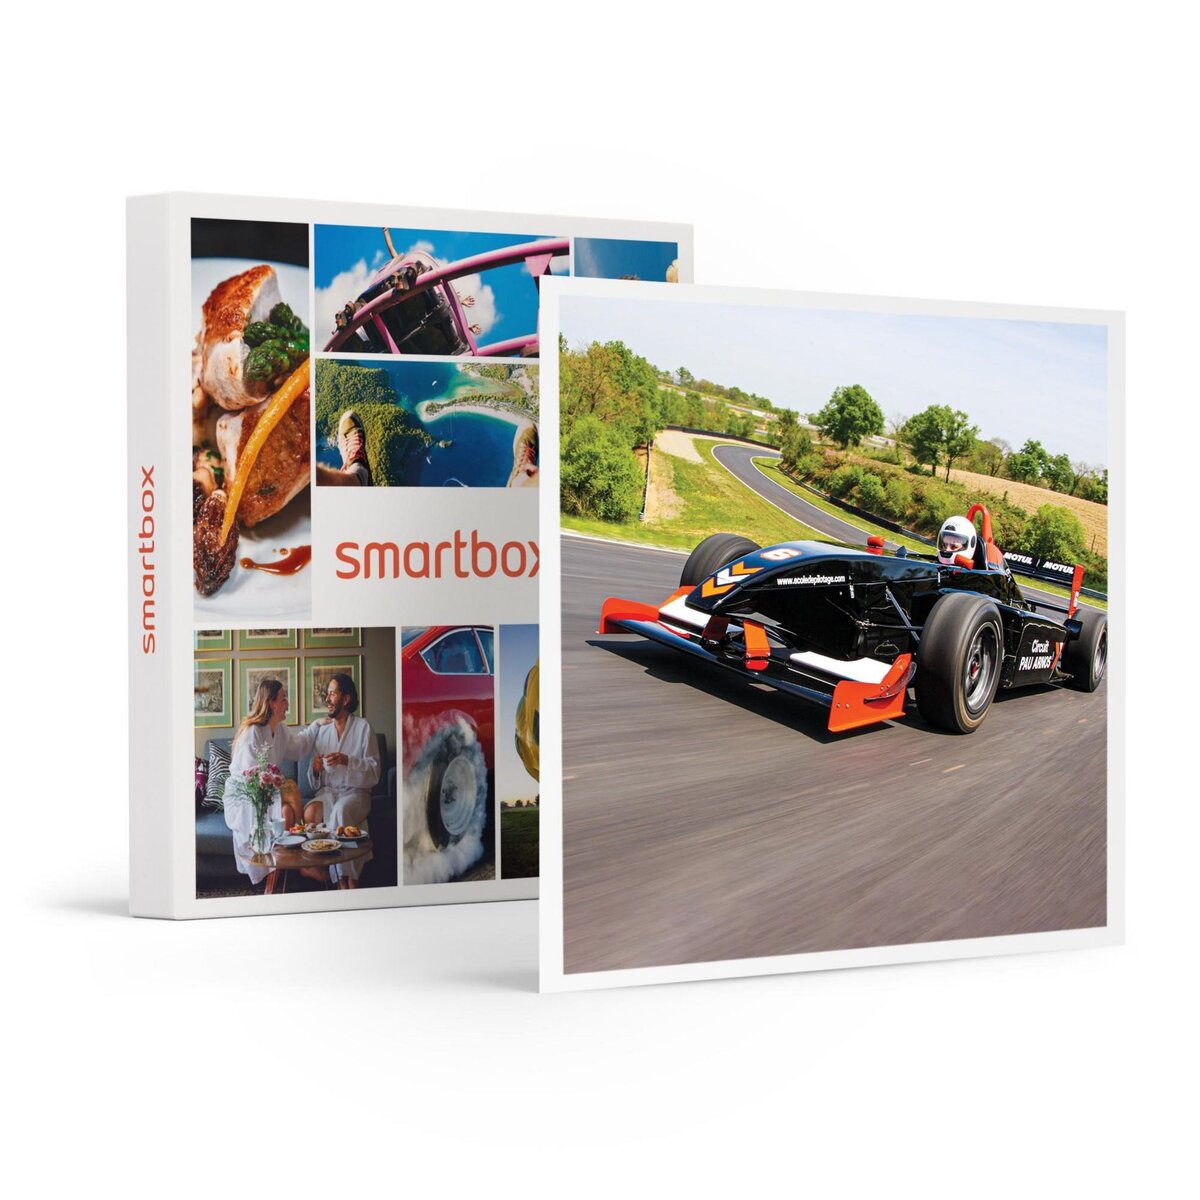 Smartbox Stage de pilotage en Formule Renault - Coffret Cadeau Sport & Aventure